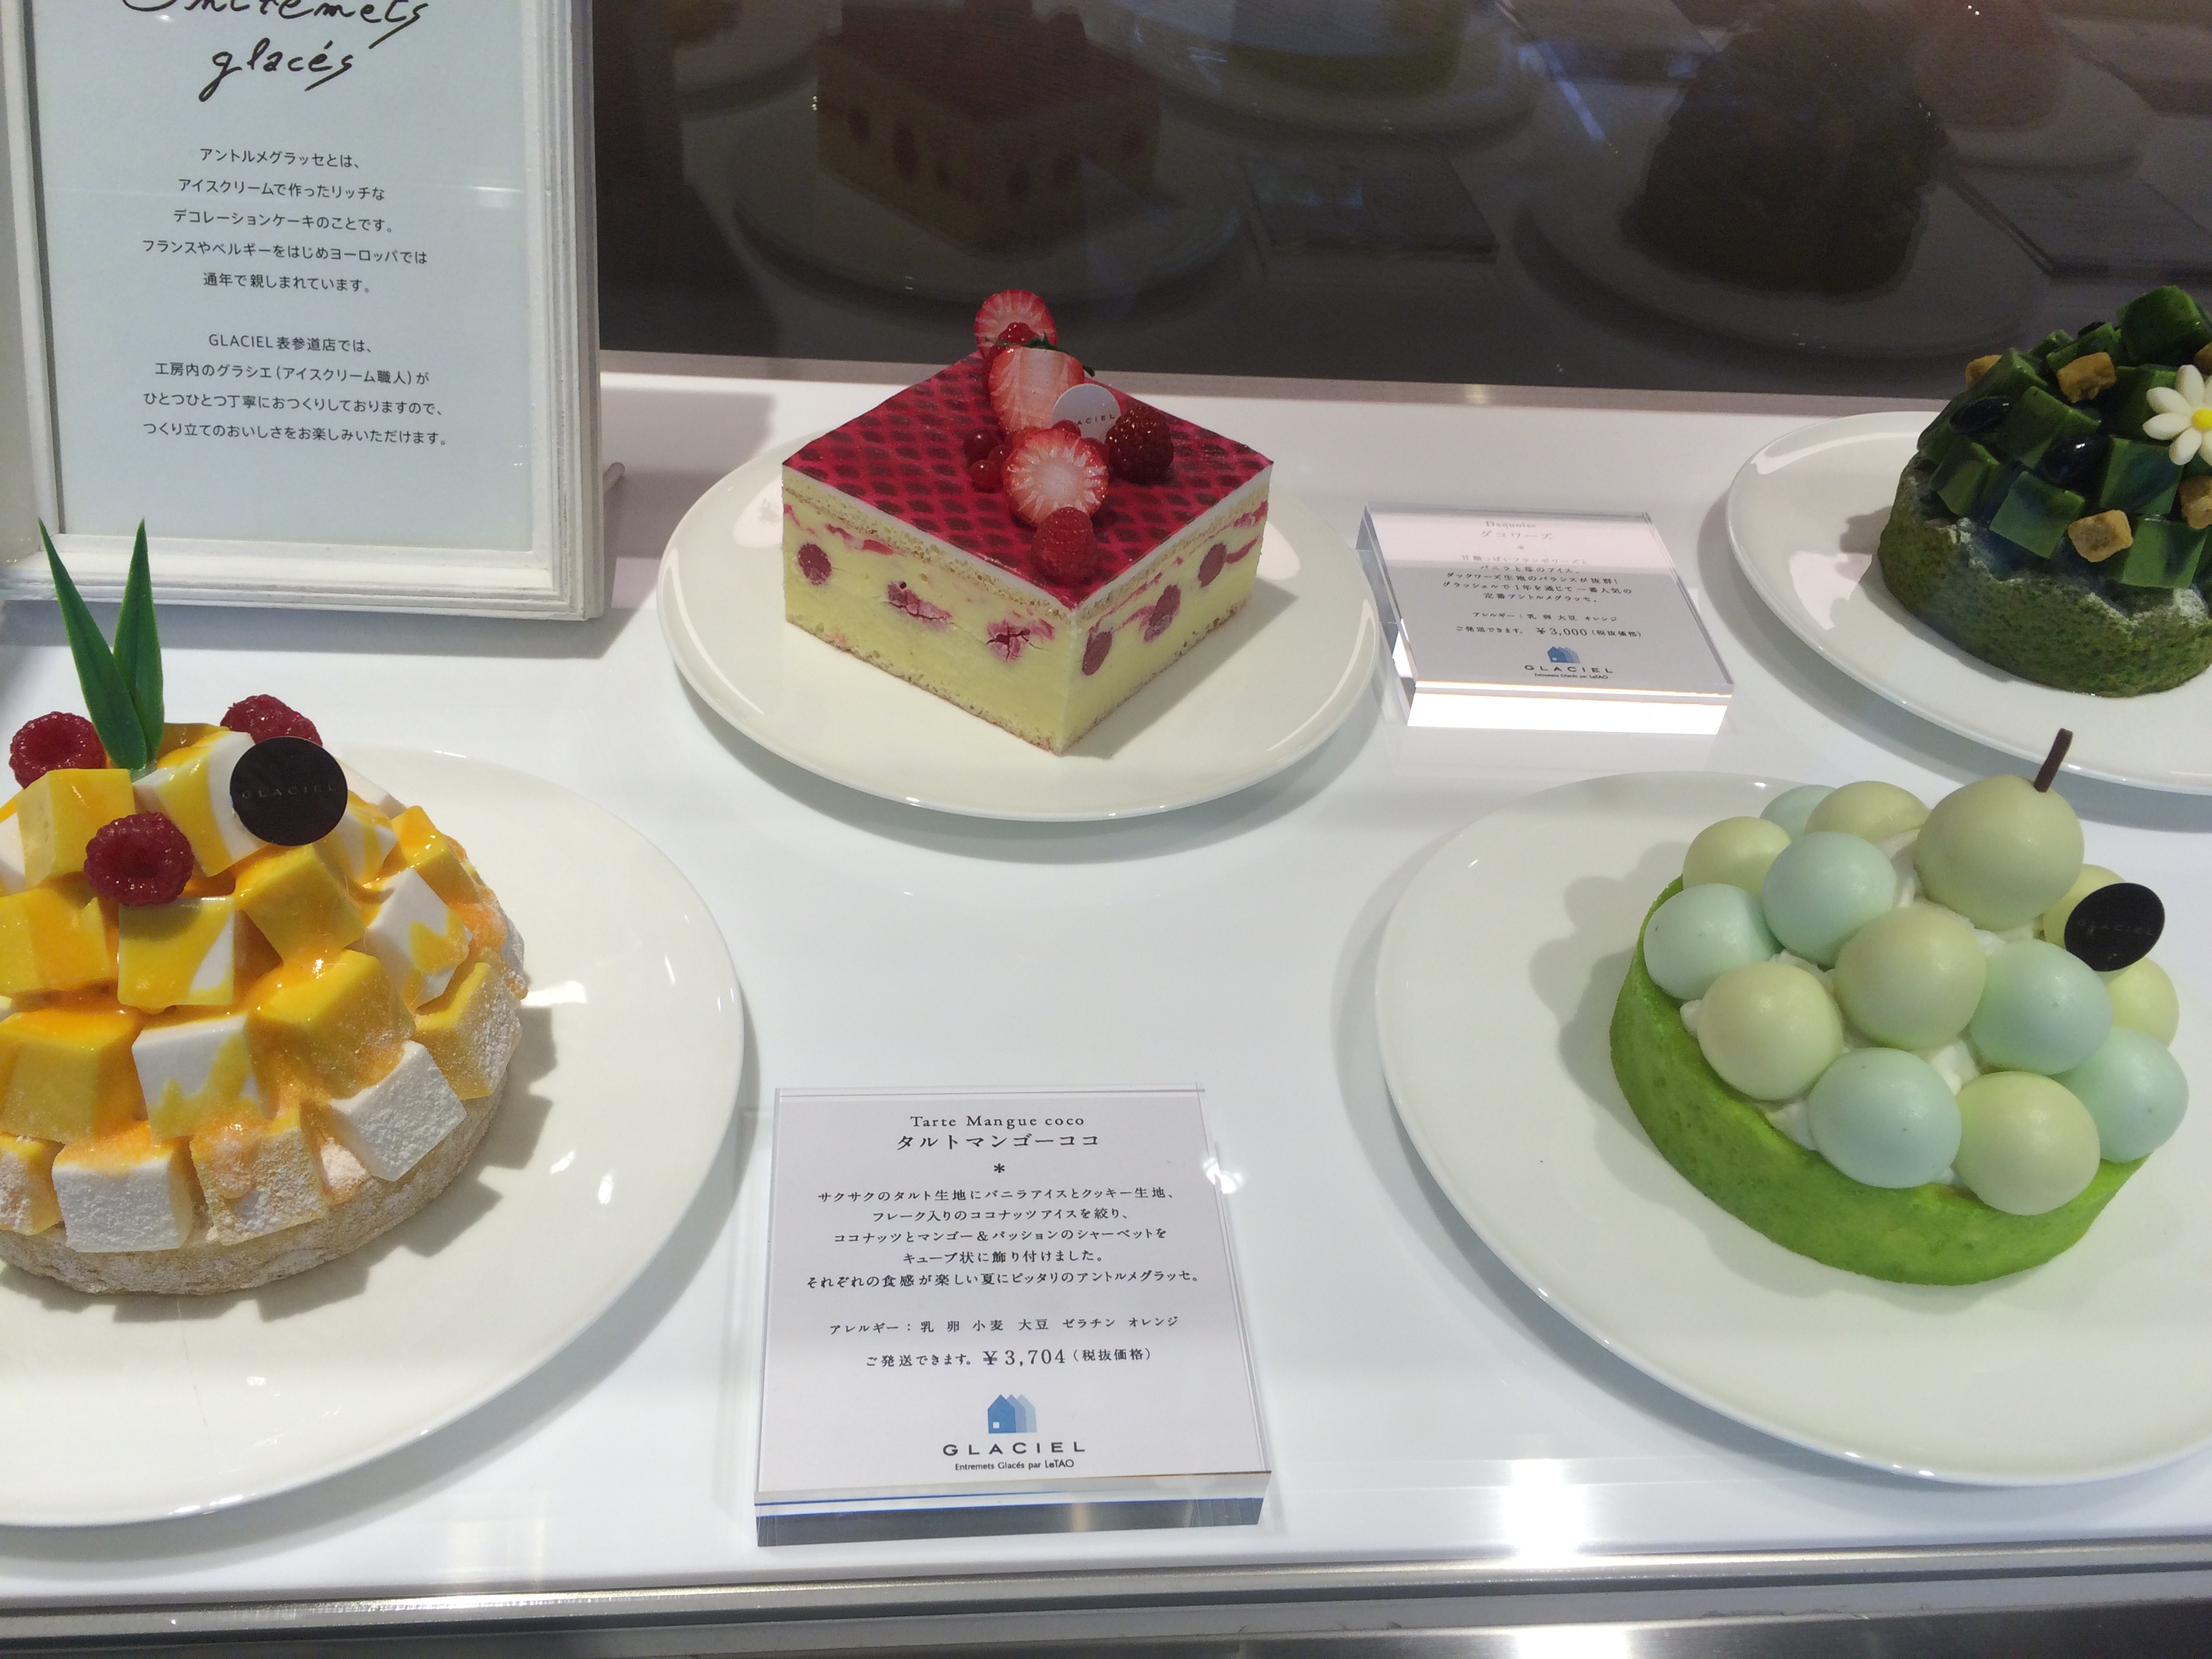 アイスクリームケーキが絶品 ルタオ系列のグラッシェル 表参道 フードアナリスト愛の東京グルメ食べ歩きブログ